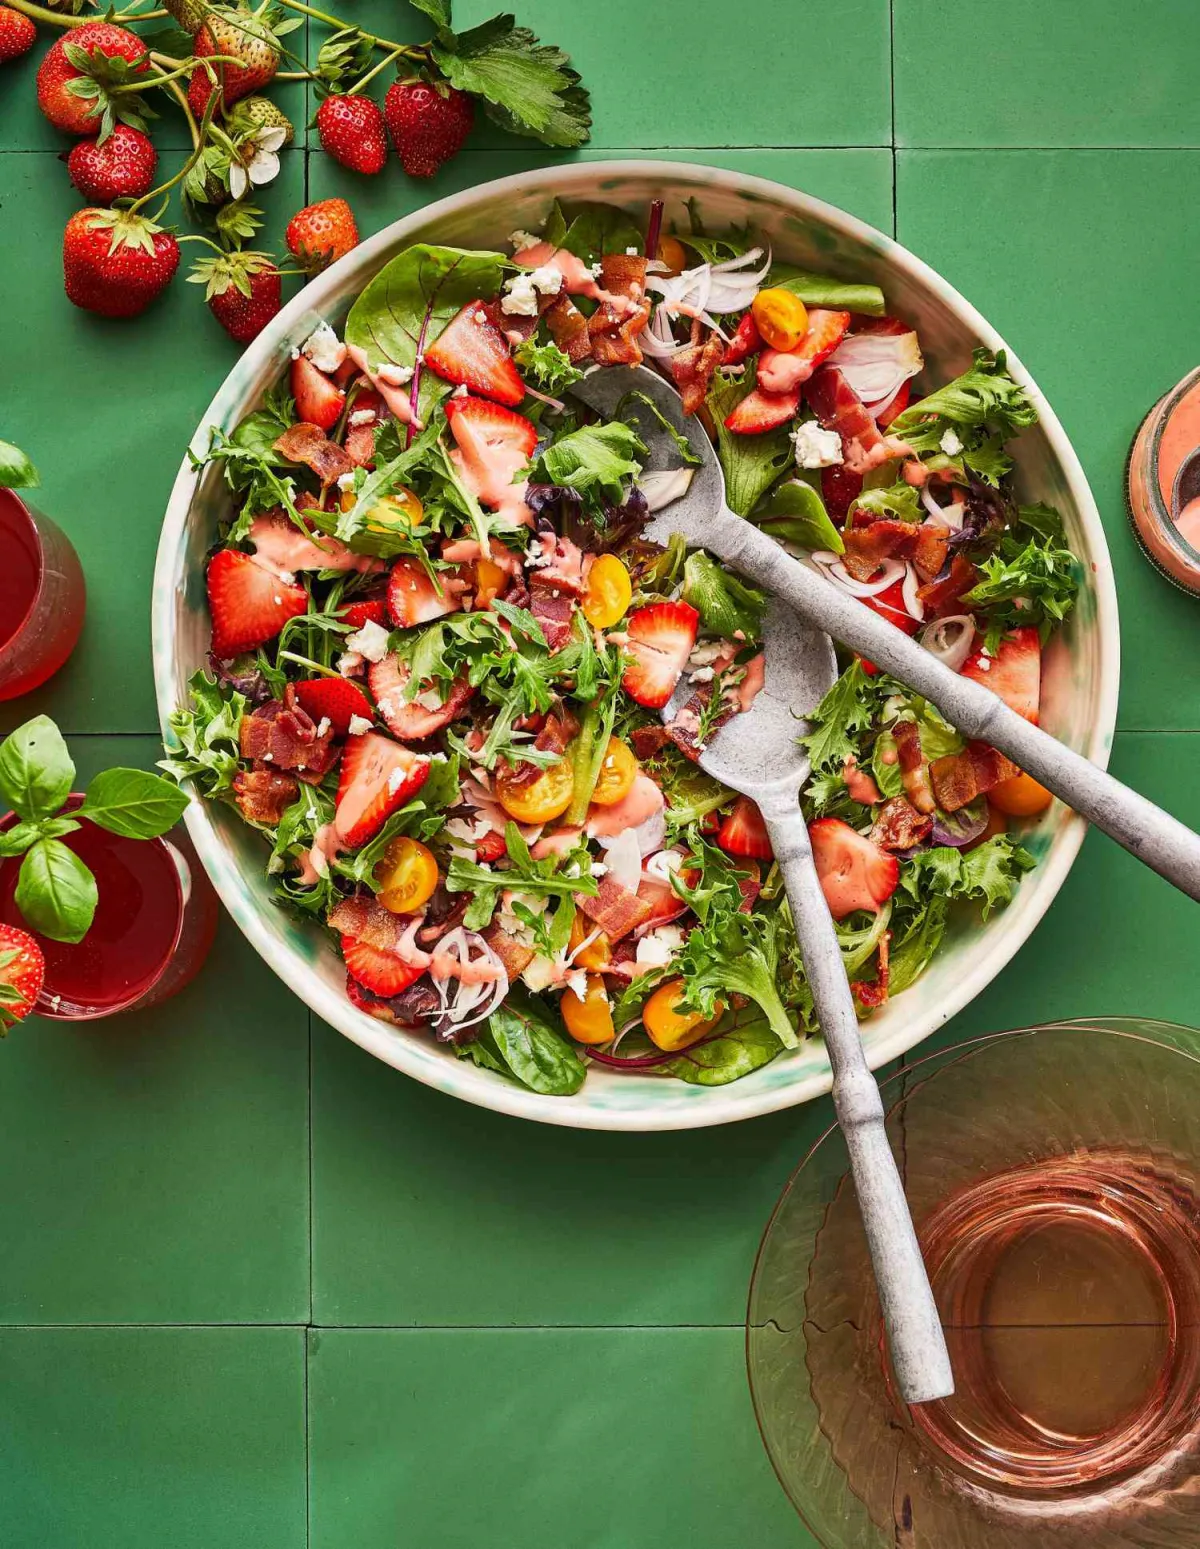 rezepte mit frühlingsenergie frischer salat mit grünzeug und erdbeeren